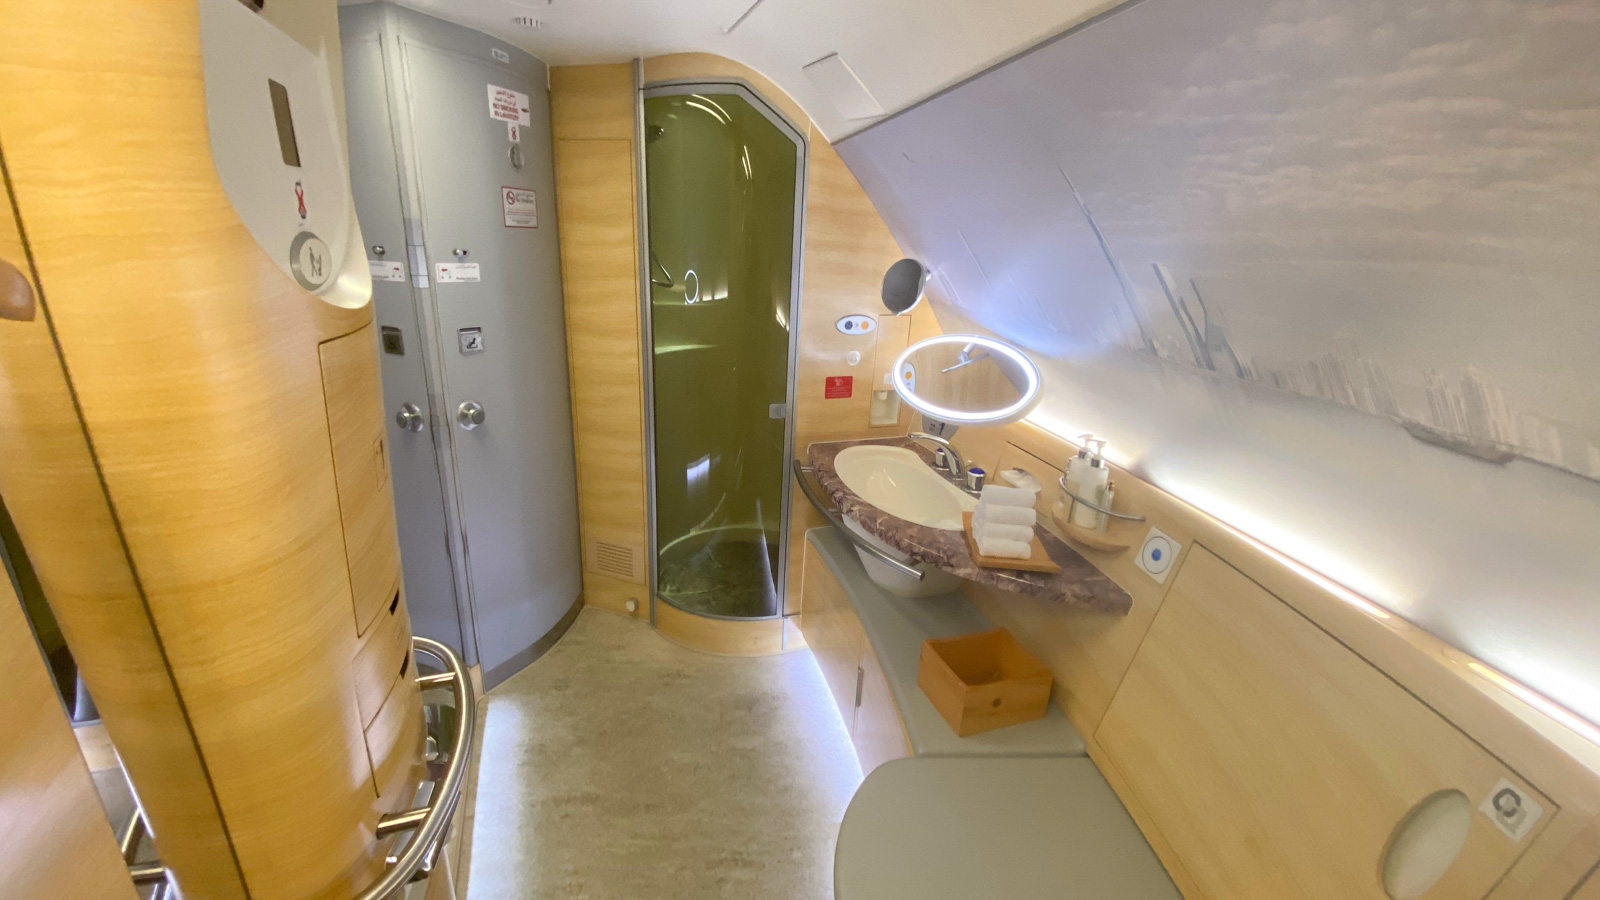 Emirates A380 First Class shower